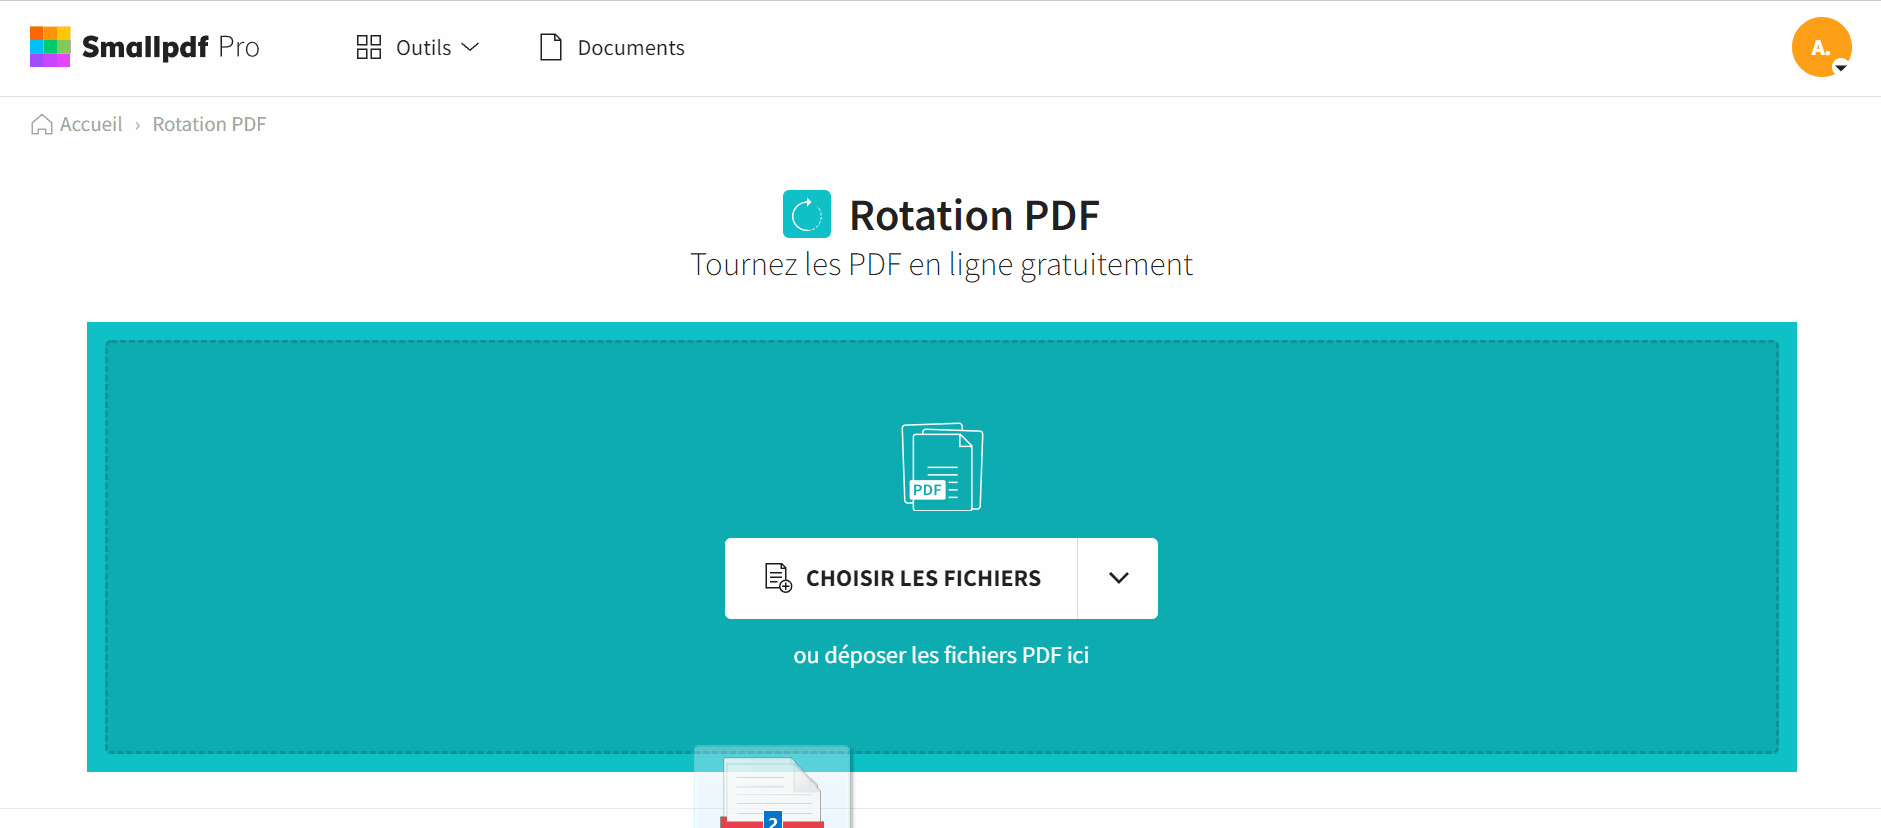 2021-11-10 - Comment faire pivoter un PDF scanné gratuitement - outil Rotation PDF, plusieurs documents